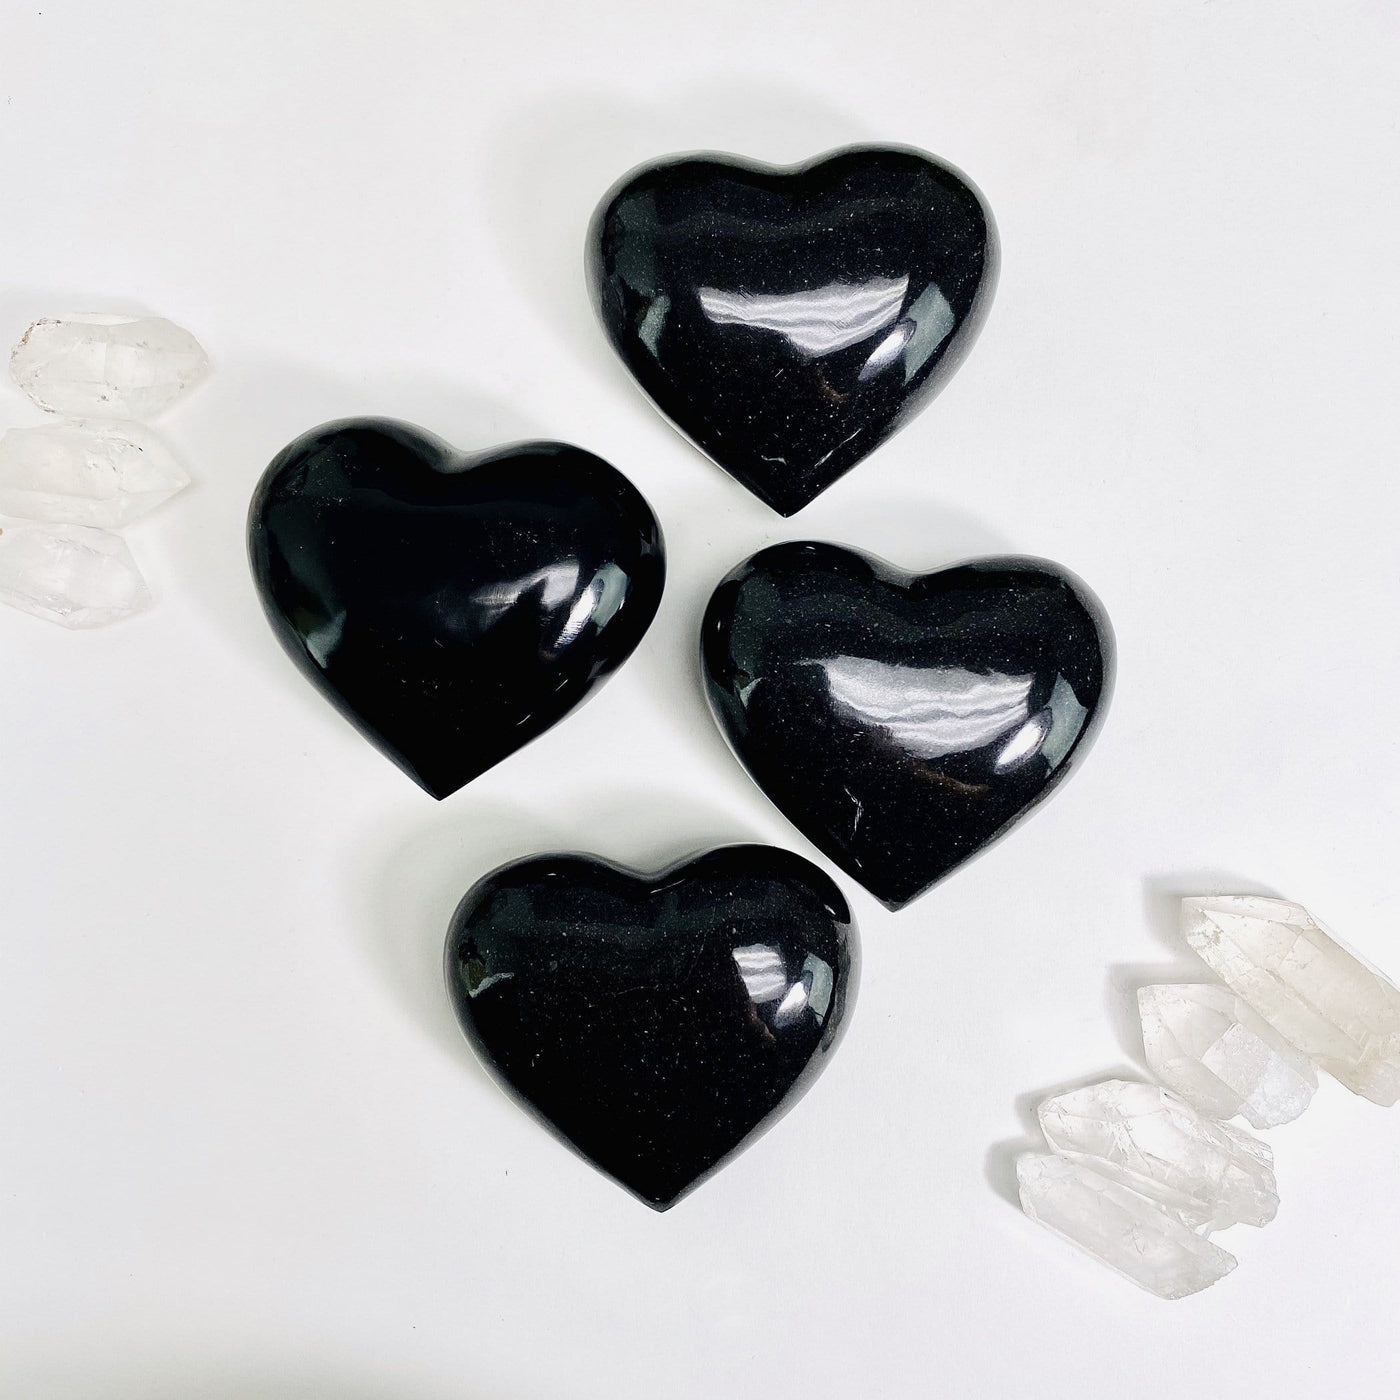 4 black onyx hearts